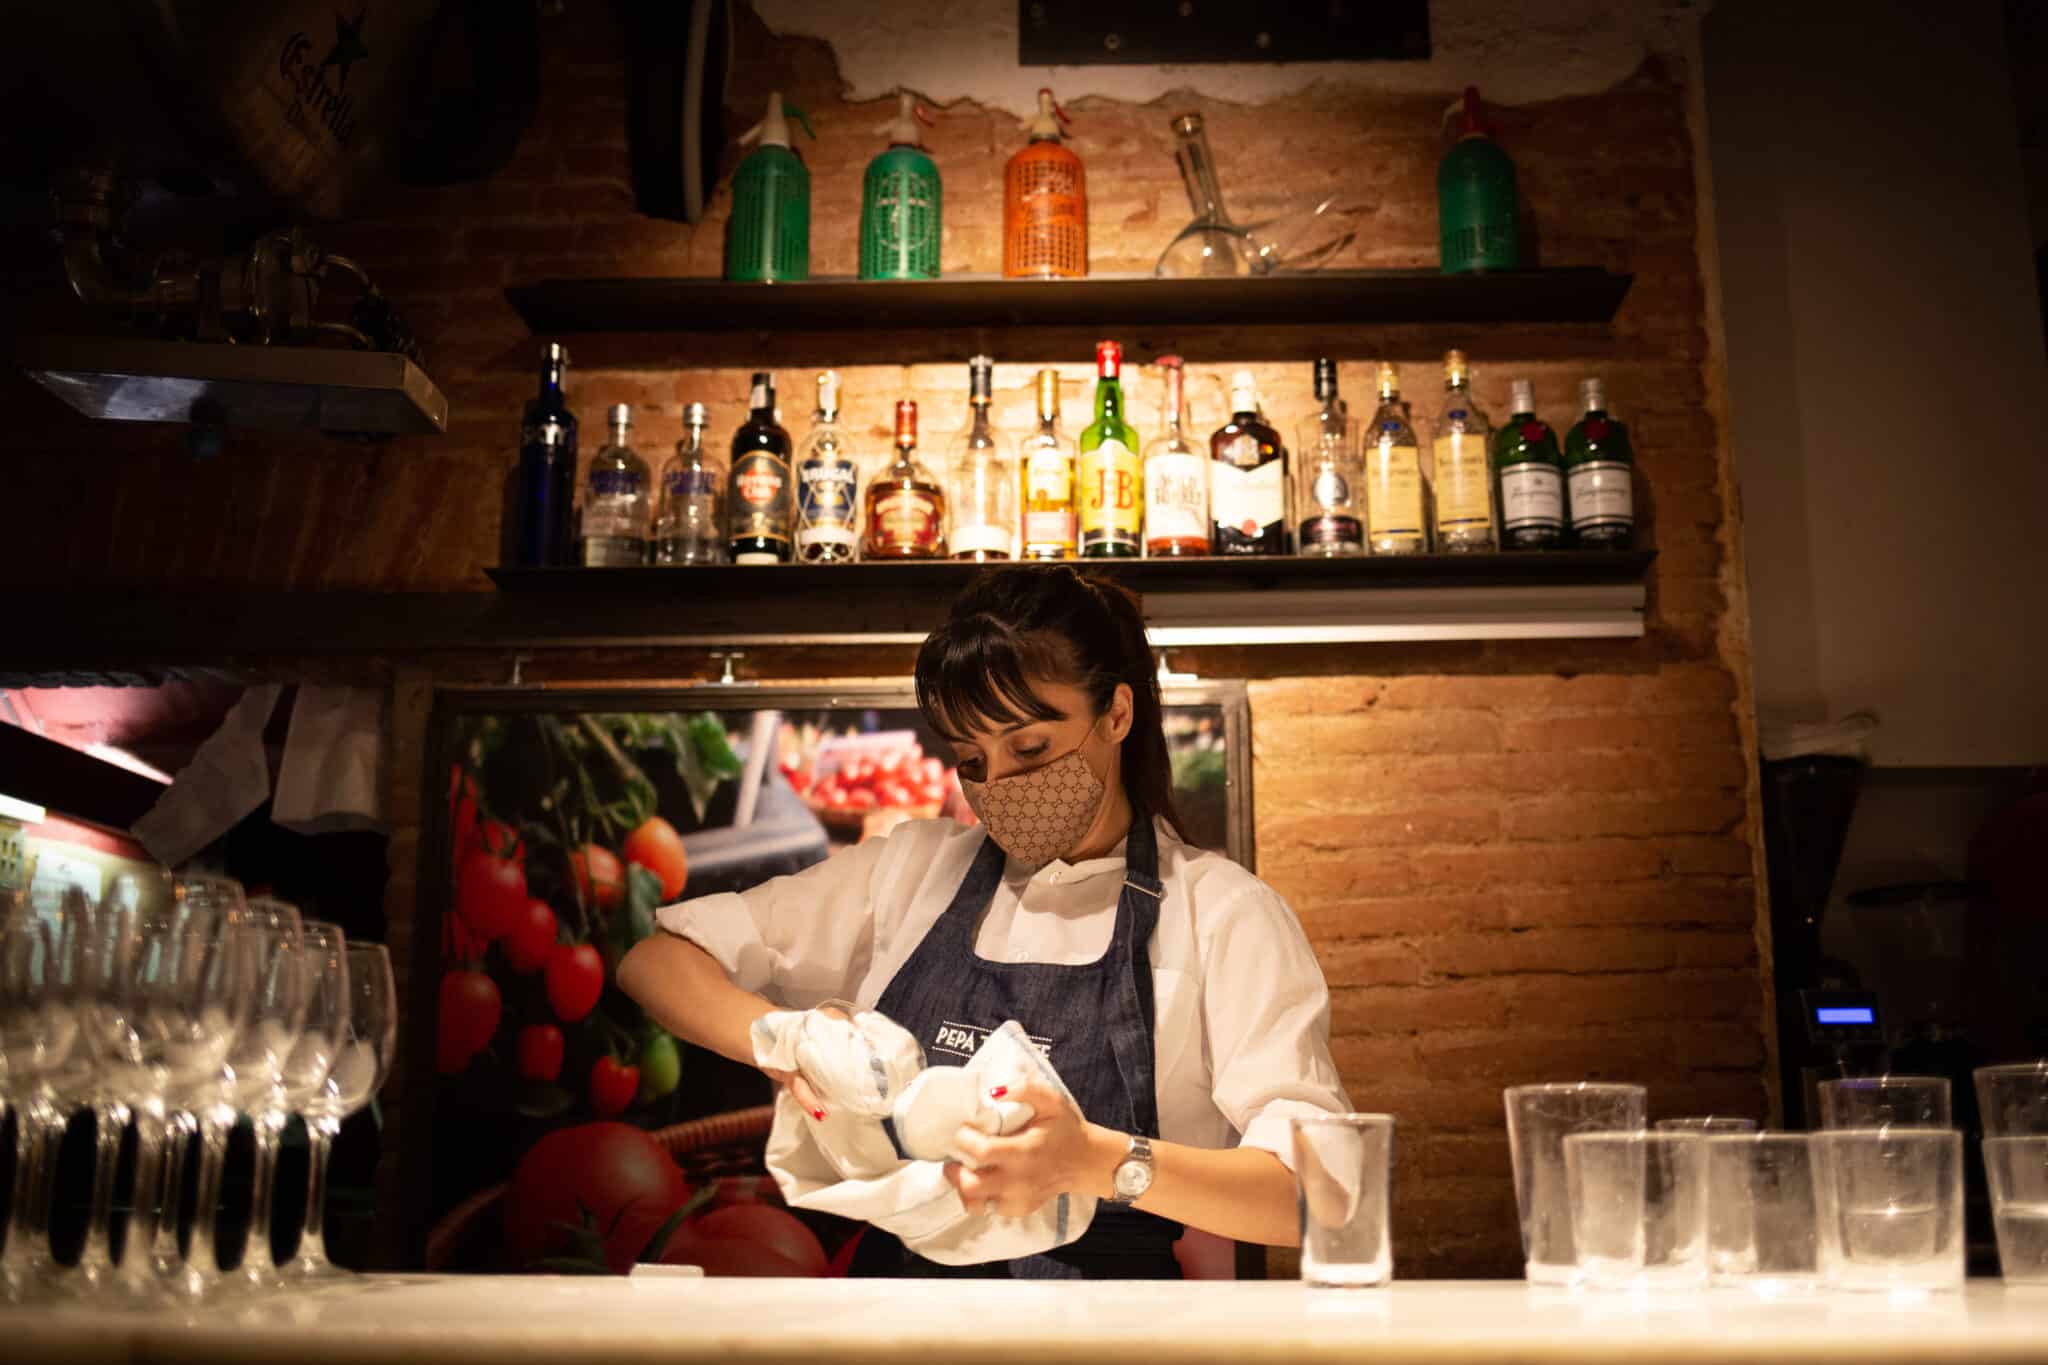 Una camarera seca unos vasos en el interior de un bar en una calle céntrica de Barcelona.